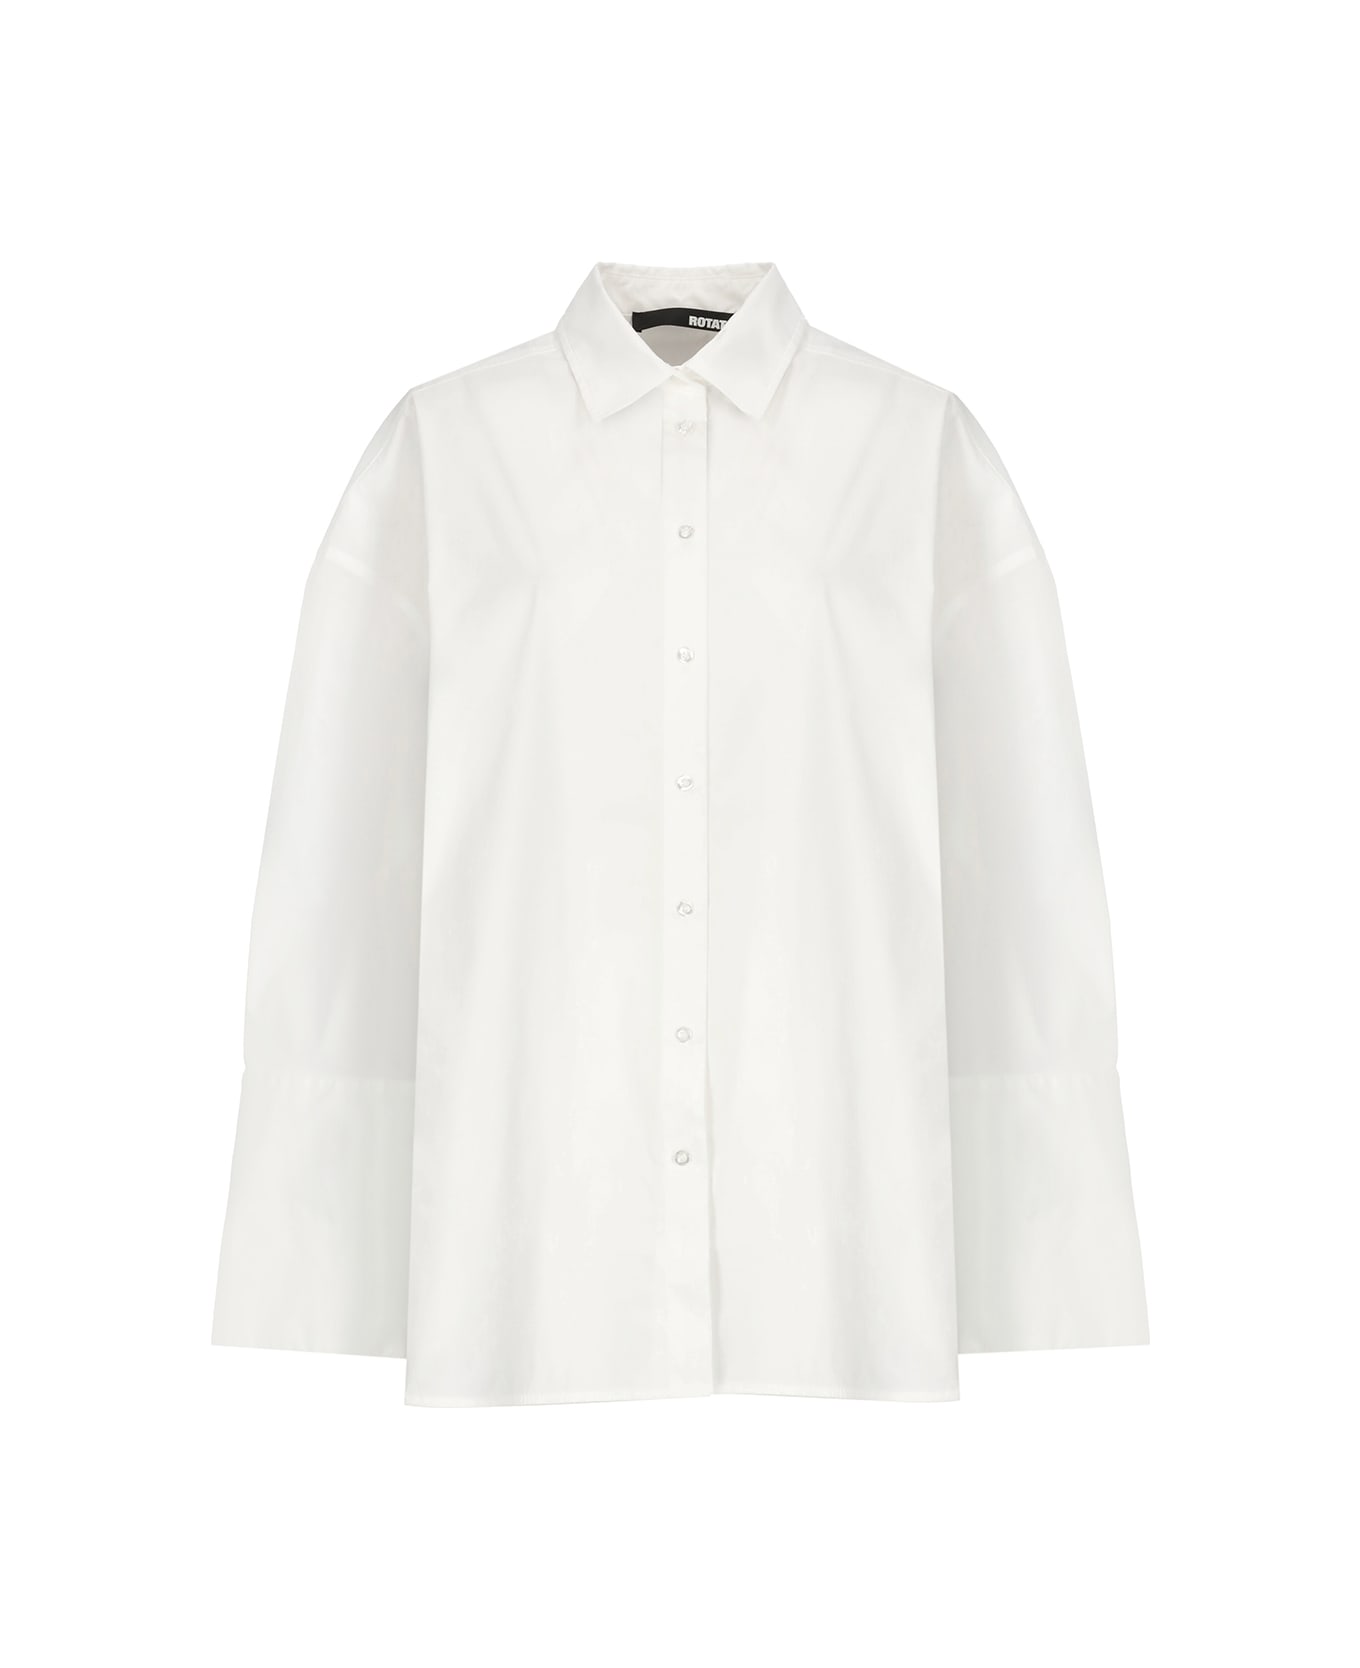 Rotate by Birger Christensen Cotton Shirt - White